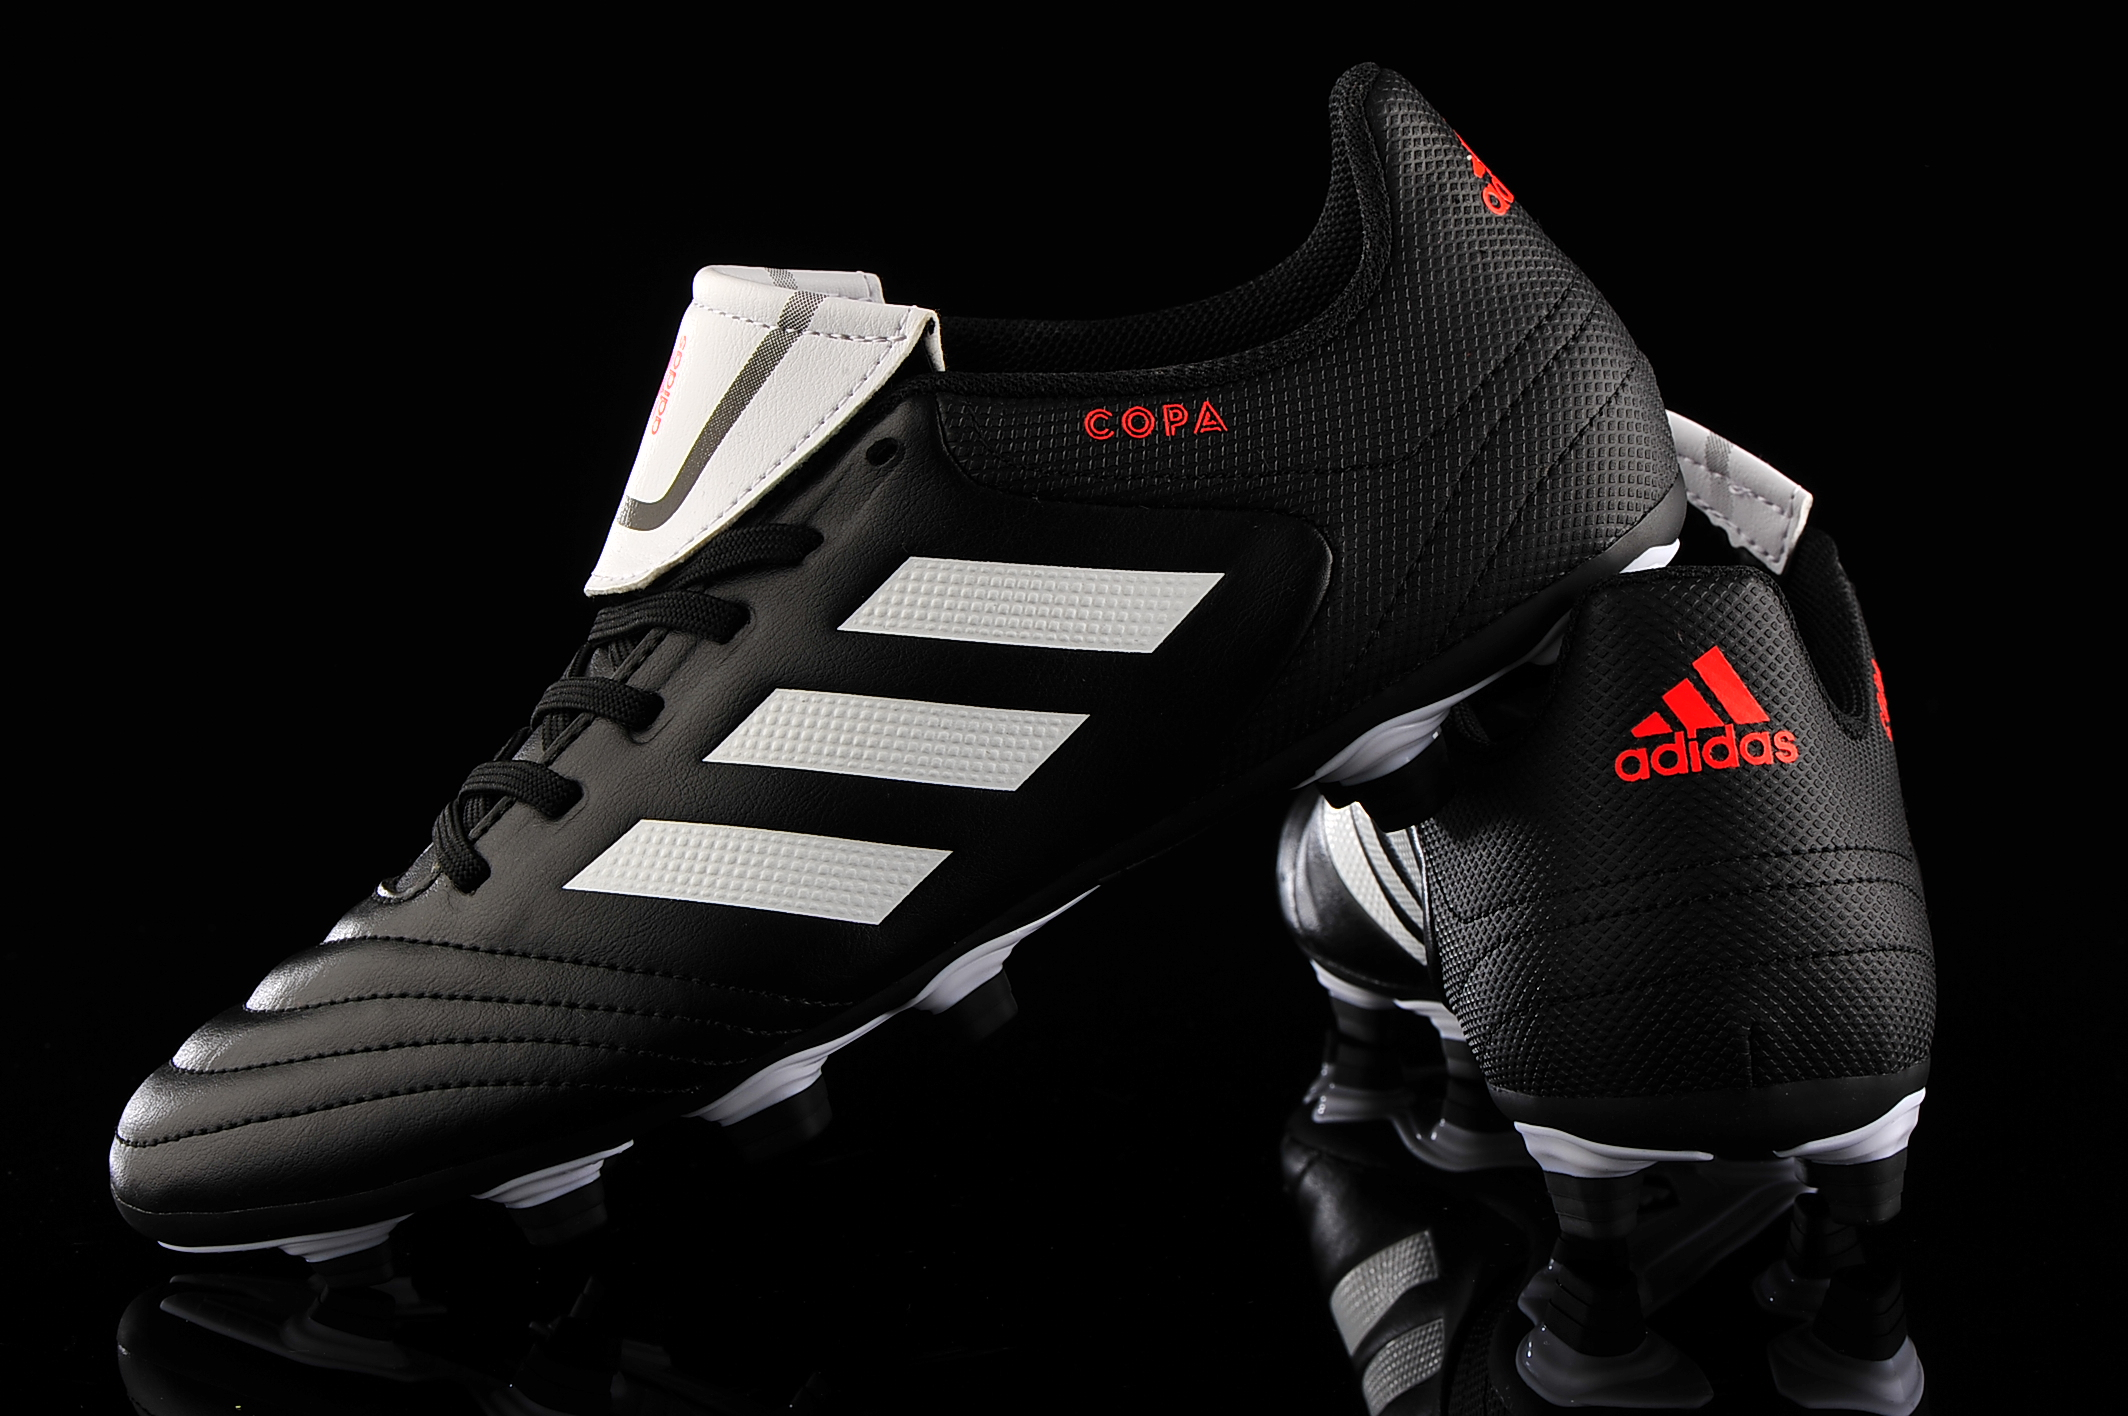 adidas Copa 17.4 BA8524 | R-GOL.com - Football boots & equipment